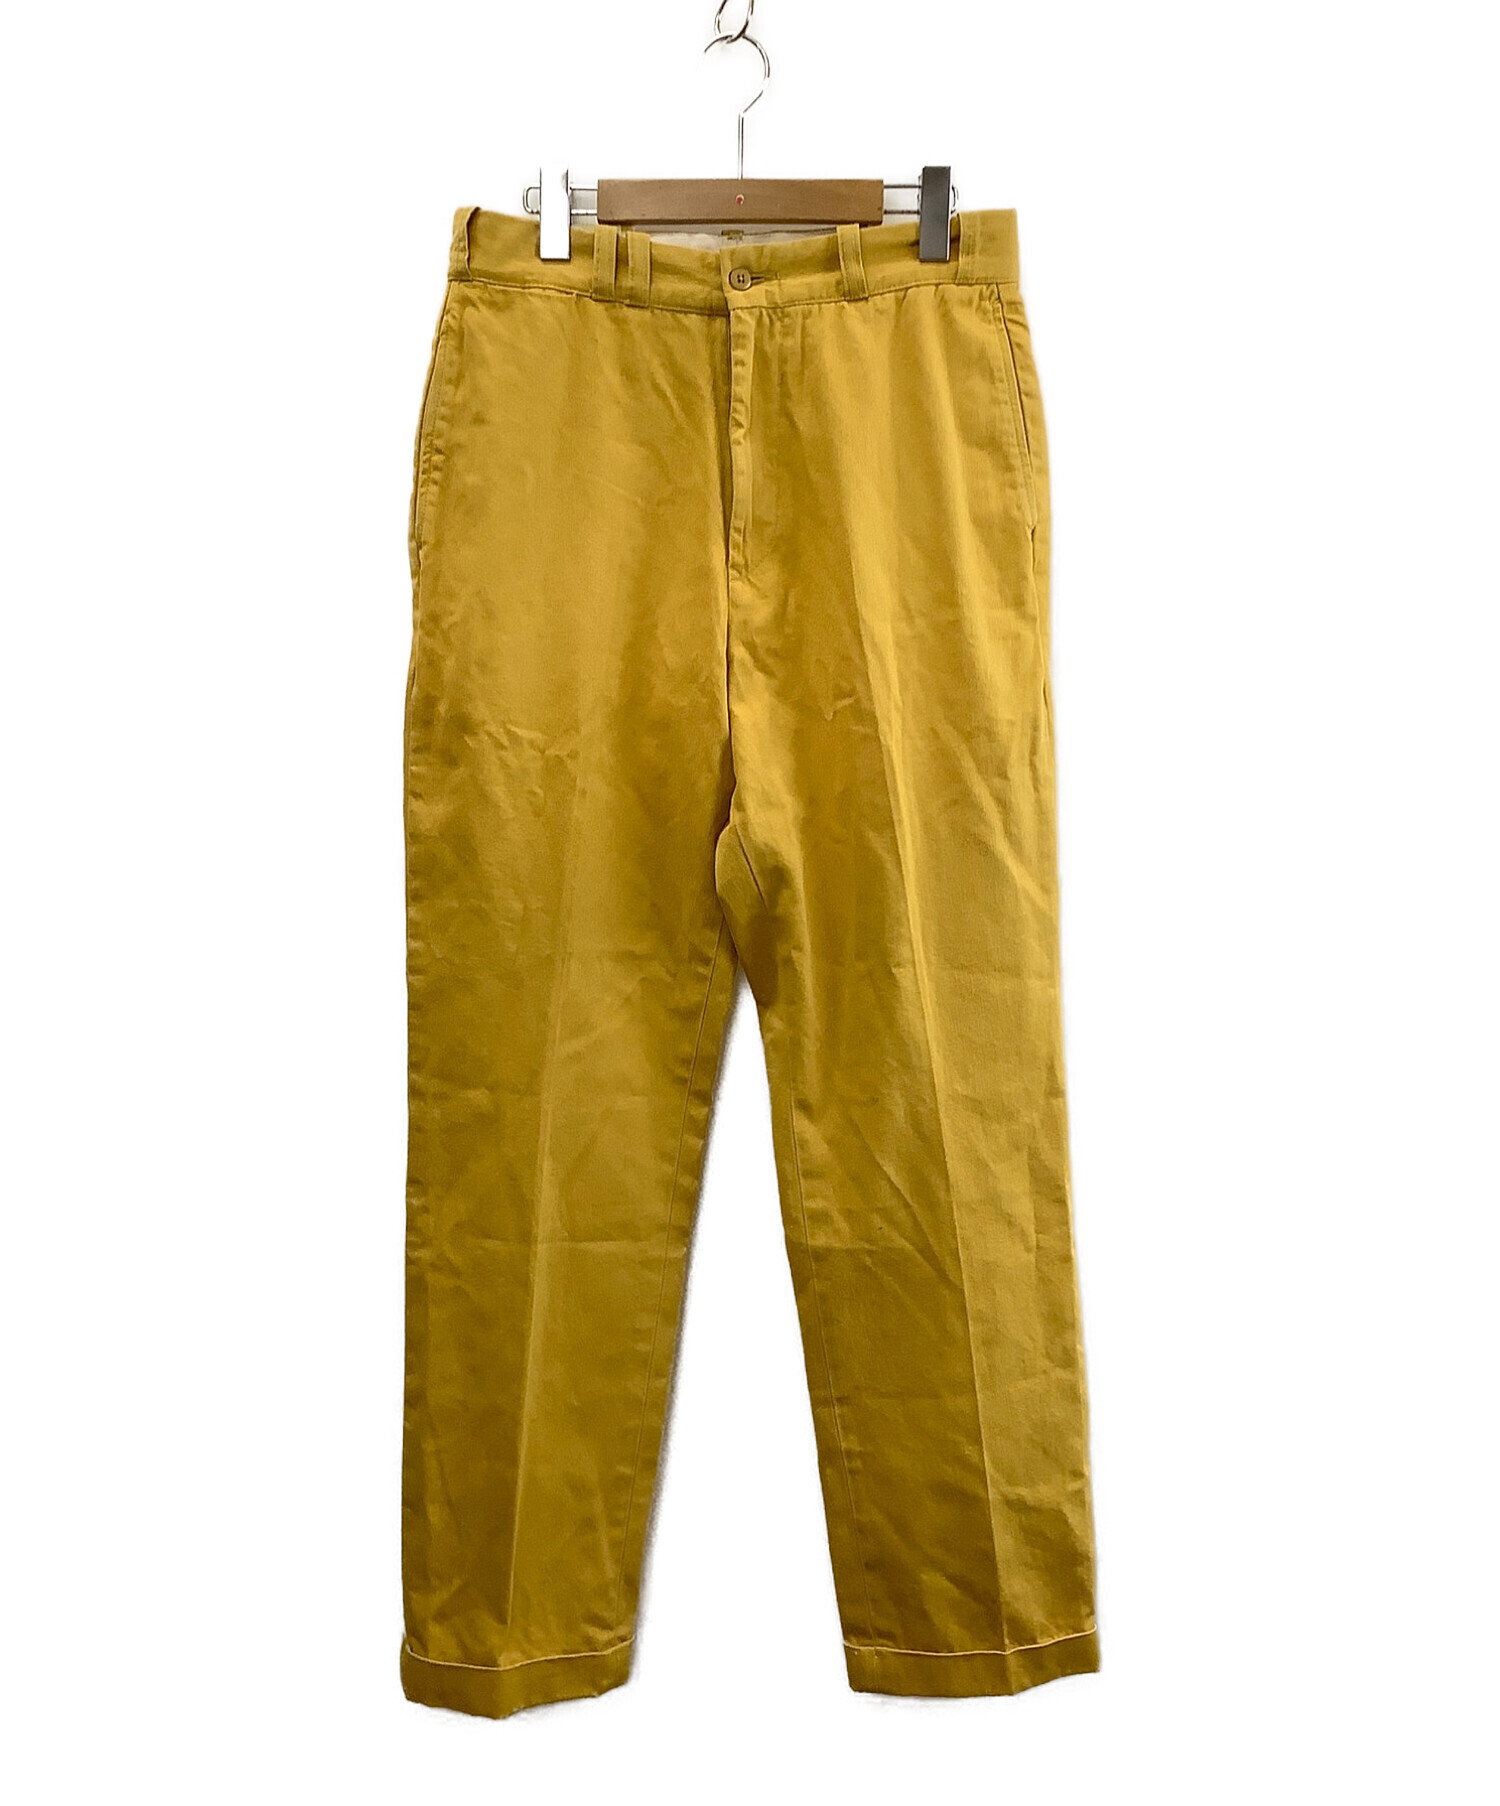 LEVI'S VINTAGE CLOTHING (リーバイスヴィンテージクロージング) カラーパンツ サイズ:SIZE 78.5cm (W31)